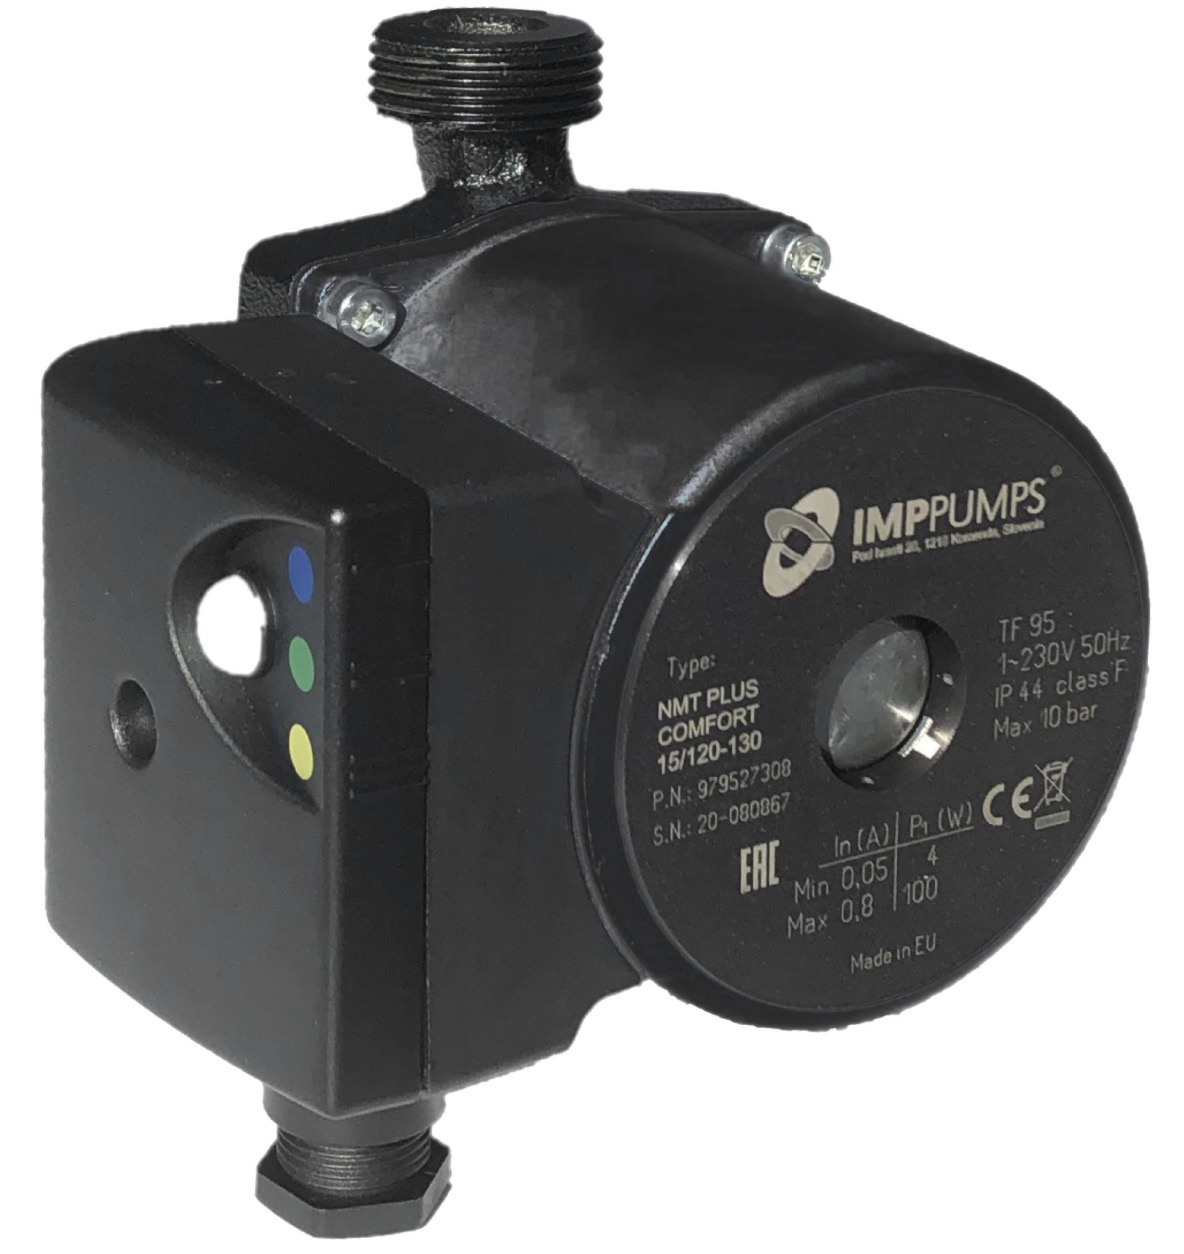 IMP Pumps NMT Plus Comfort 15/120-130 (979527308)